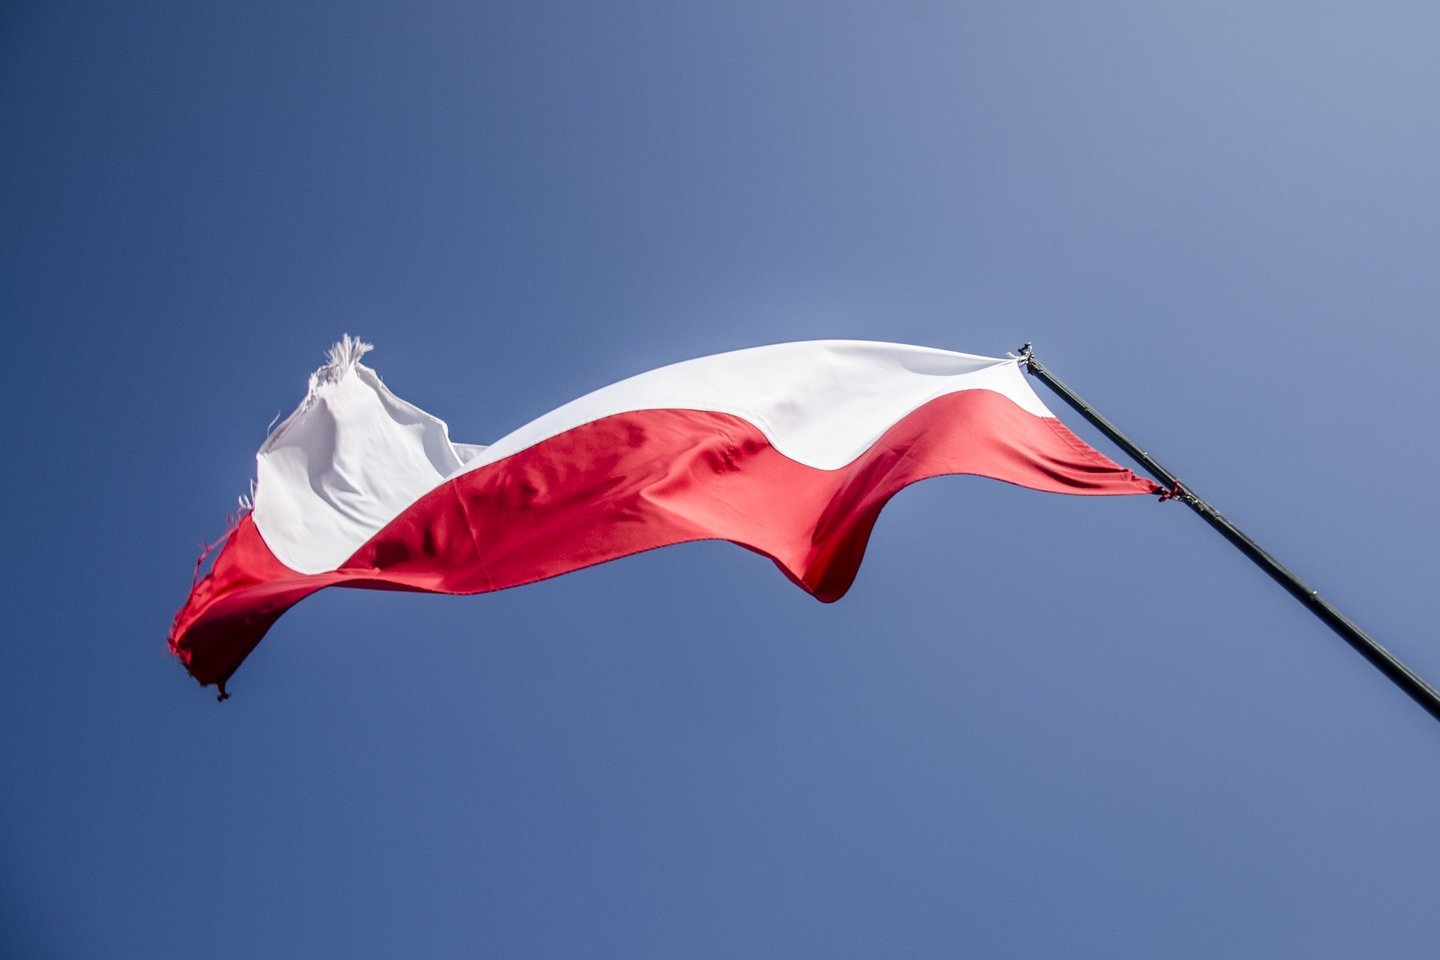 Teismas nurodė Lenkijai už nurodymo nevykdymą ir kiekvieną kasyklos eksploatavimo dieną mokėti Briuseliui 500 tūkst. eurų baudą.<br>aganyga/pixabay.com nuotr.